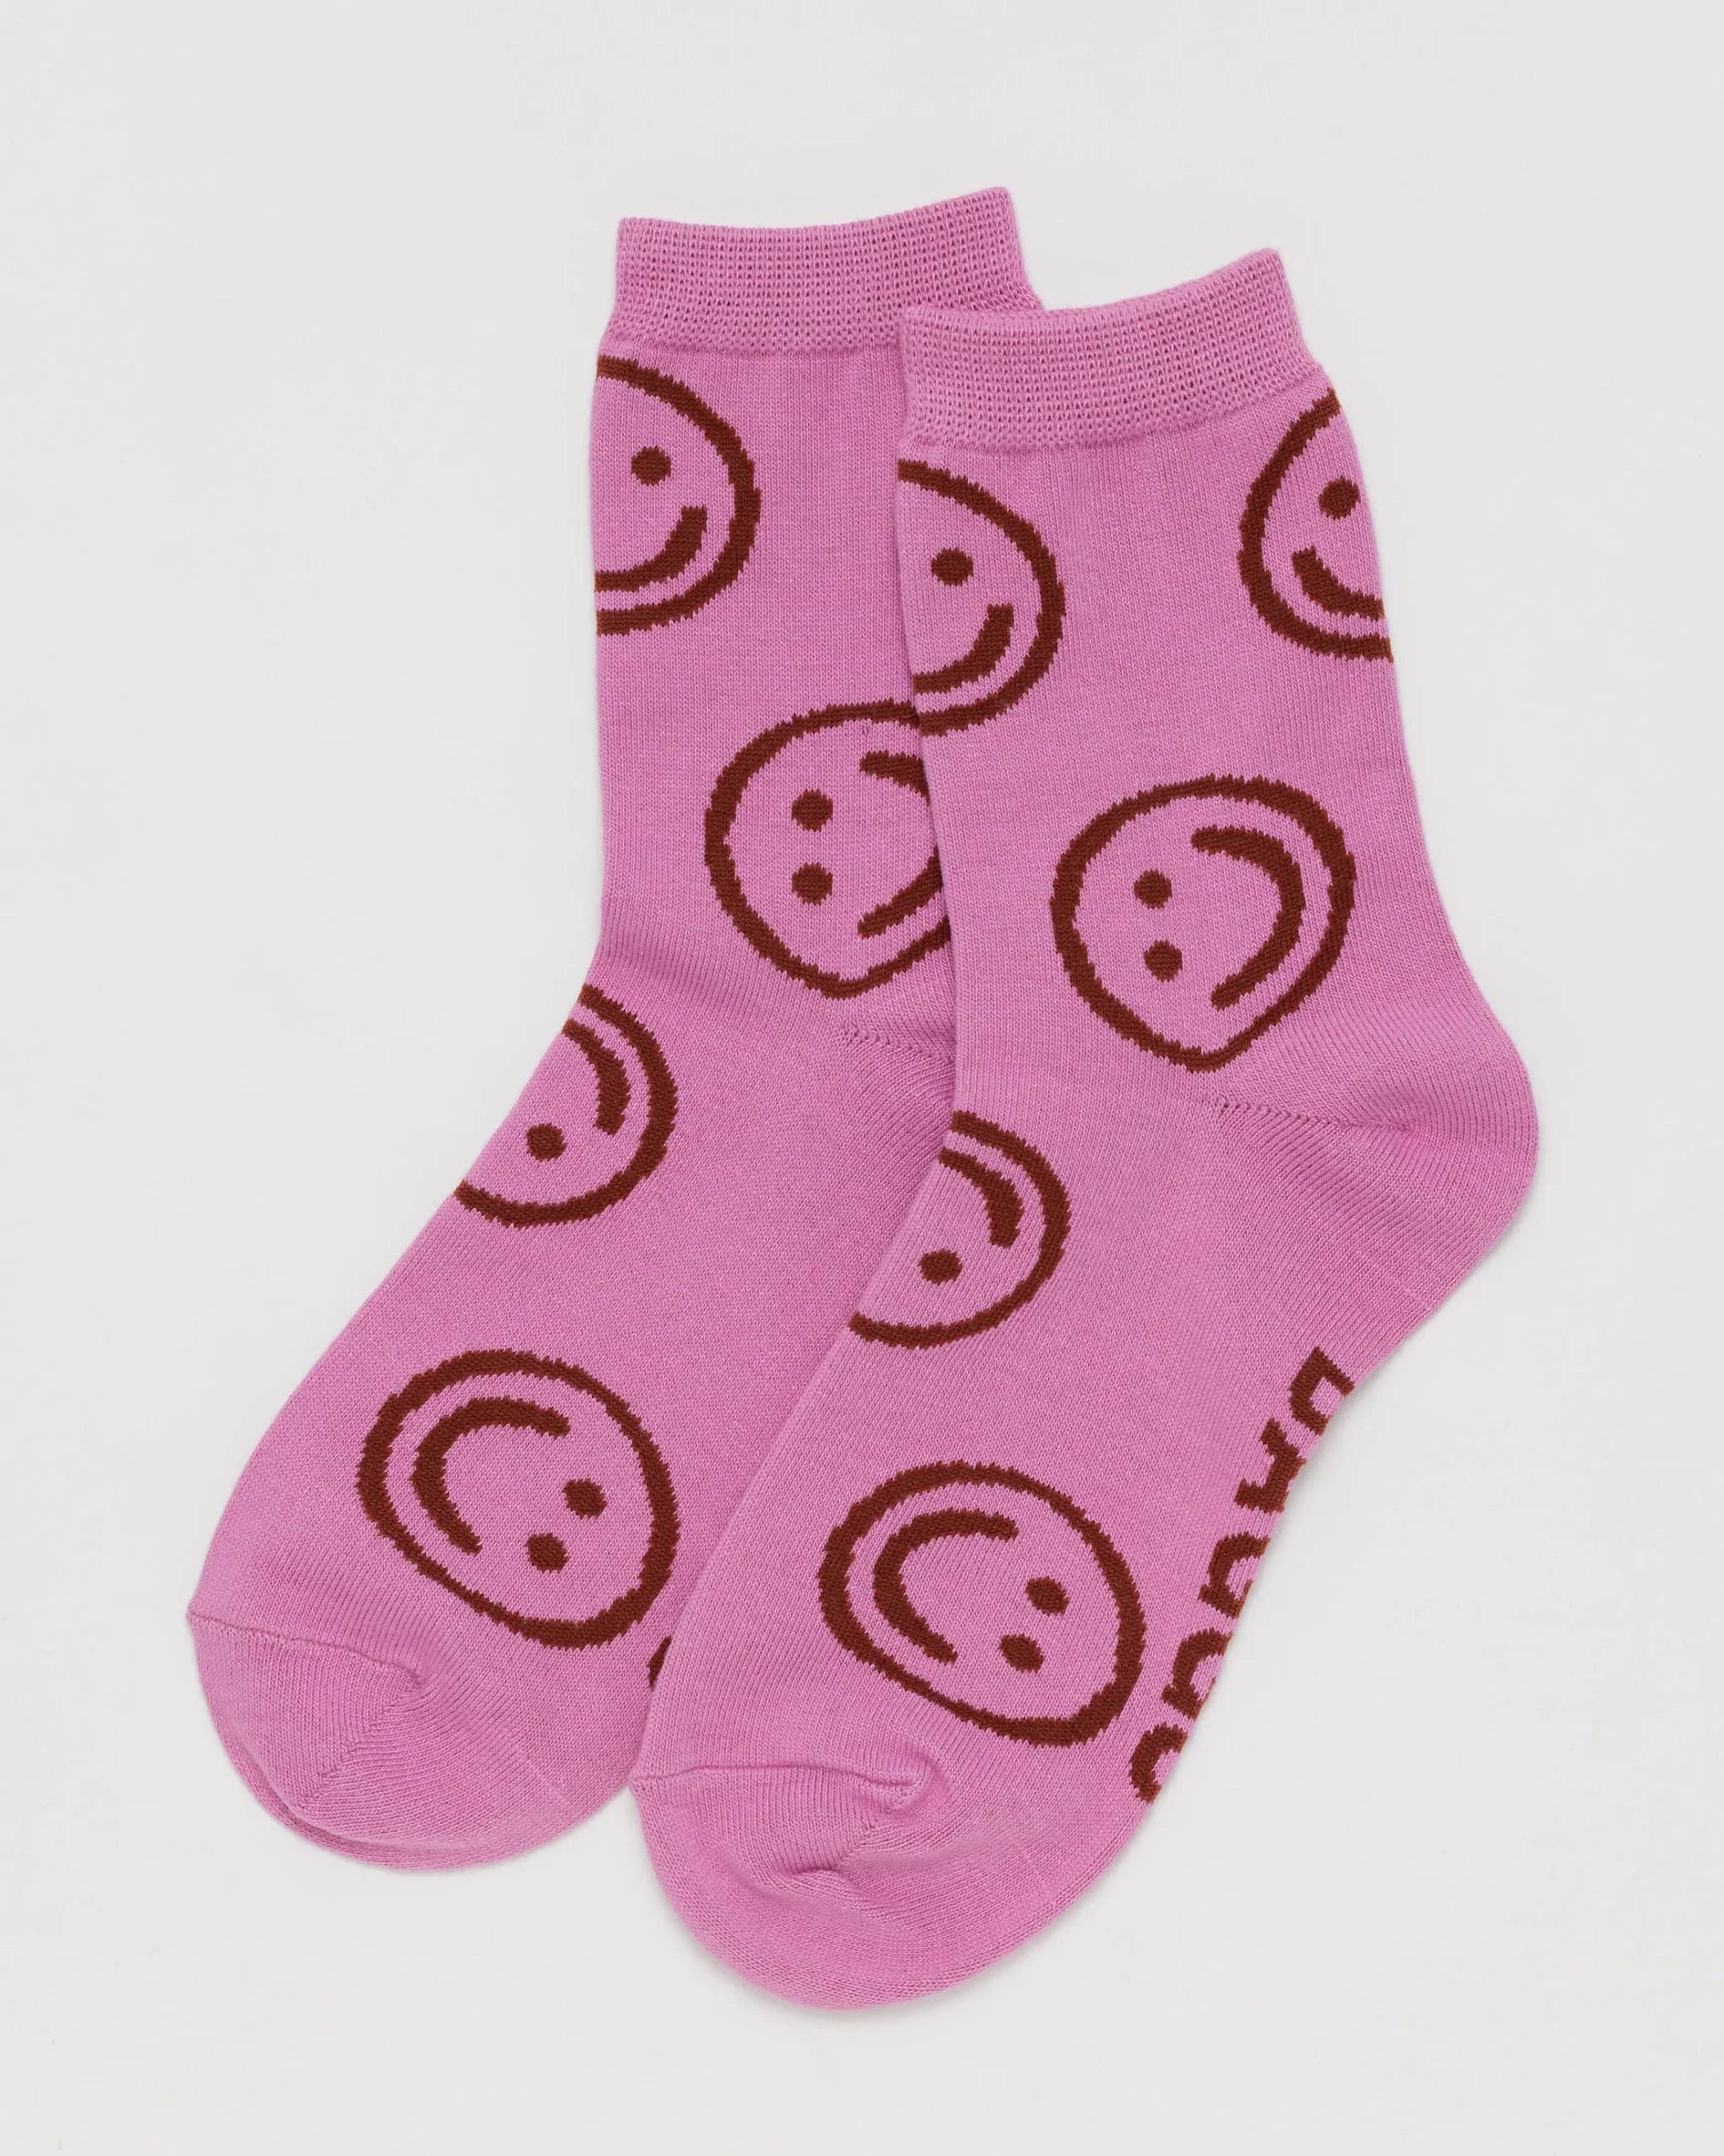 baggu adult crew socks in extra pink happy pattern